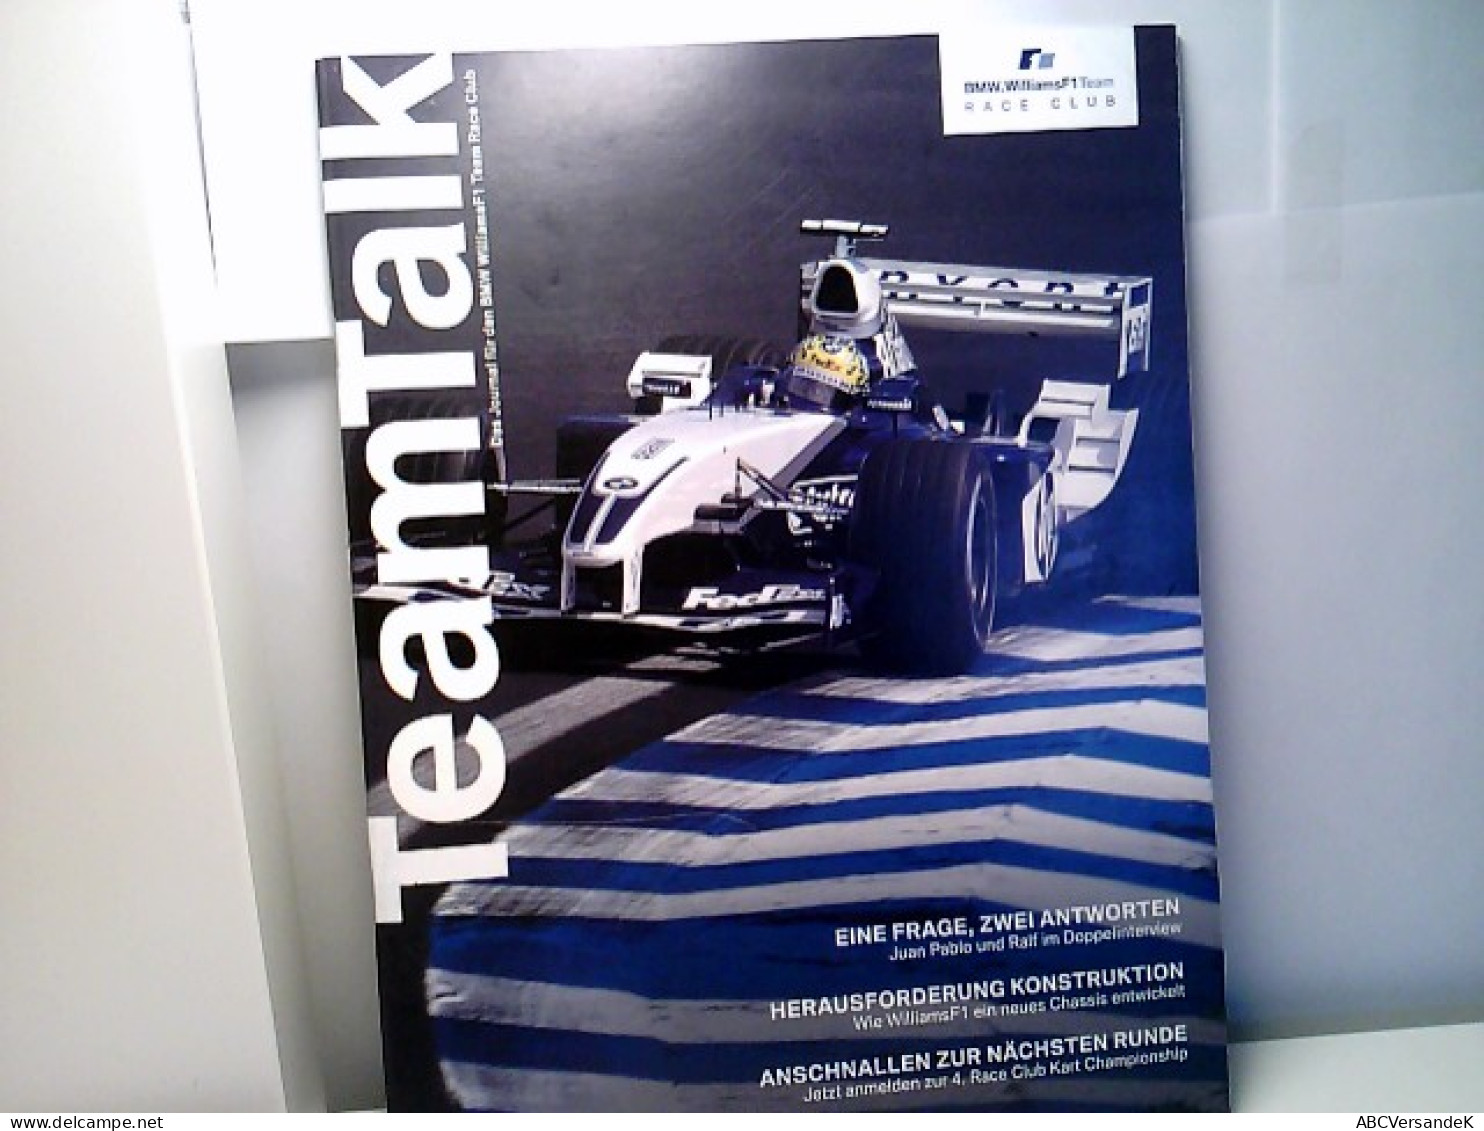 Team Talk Das Journal Für Den BMW WilliamsF1 Team Race Club. - Deportes